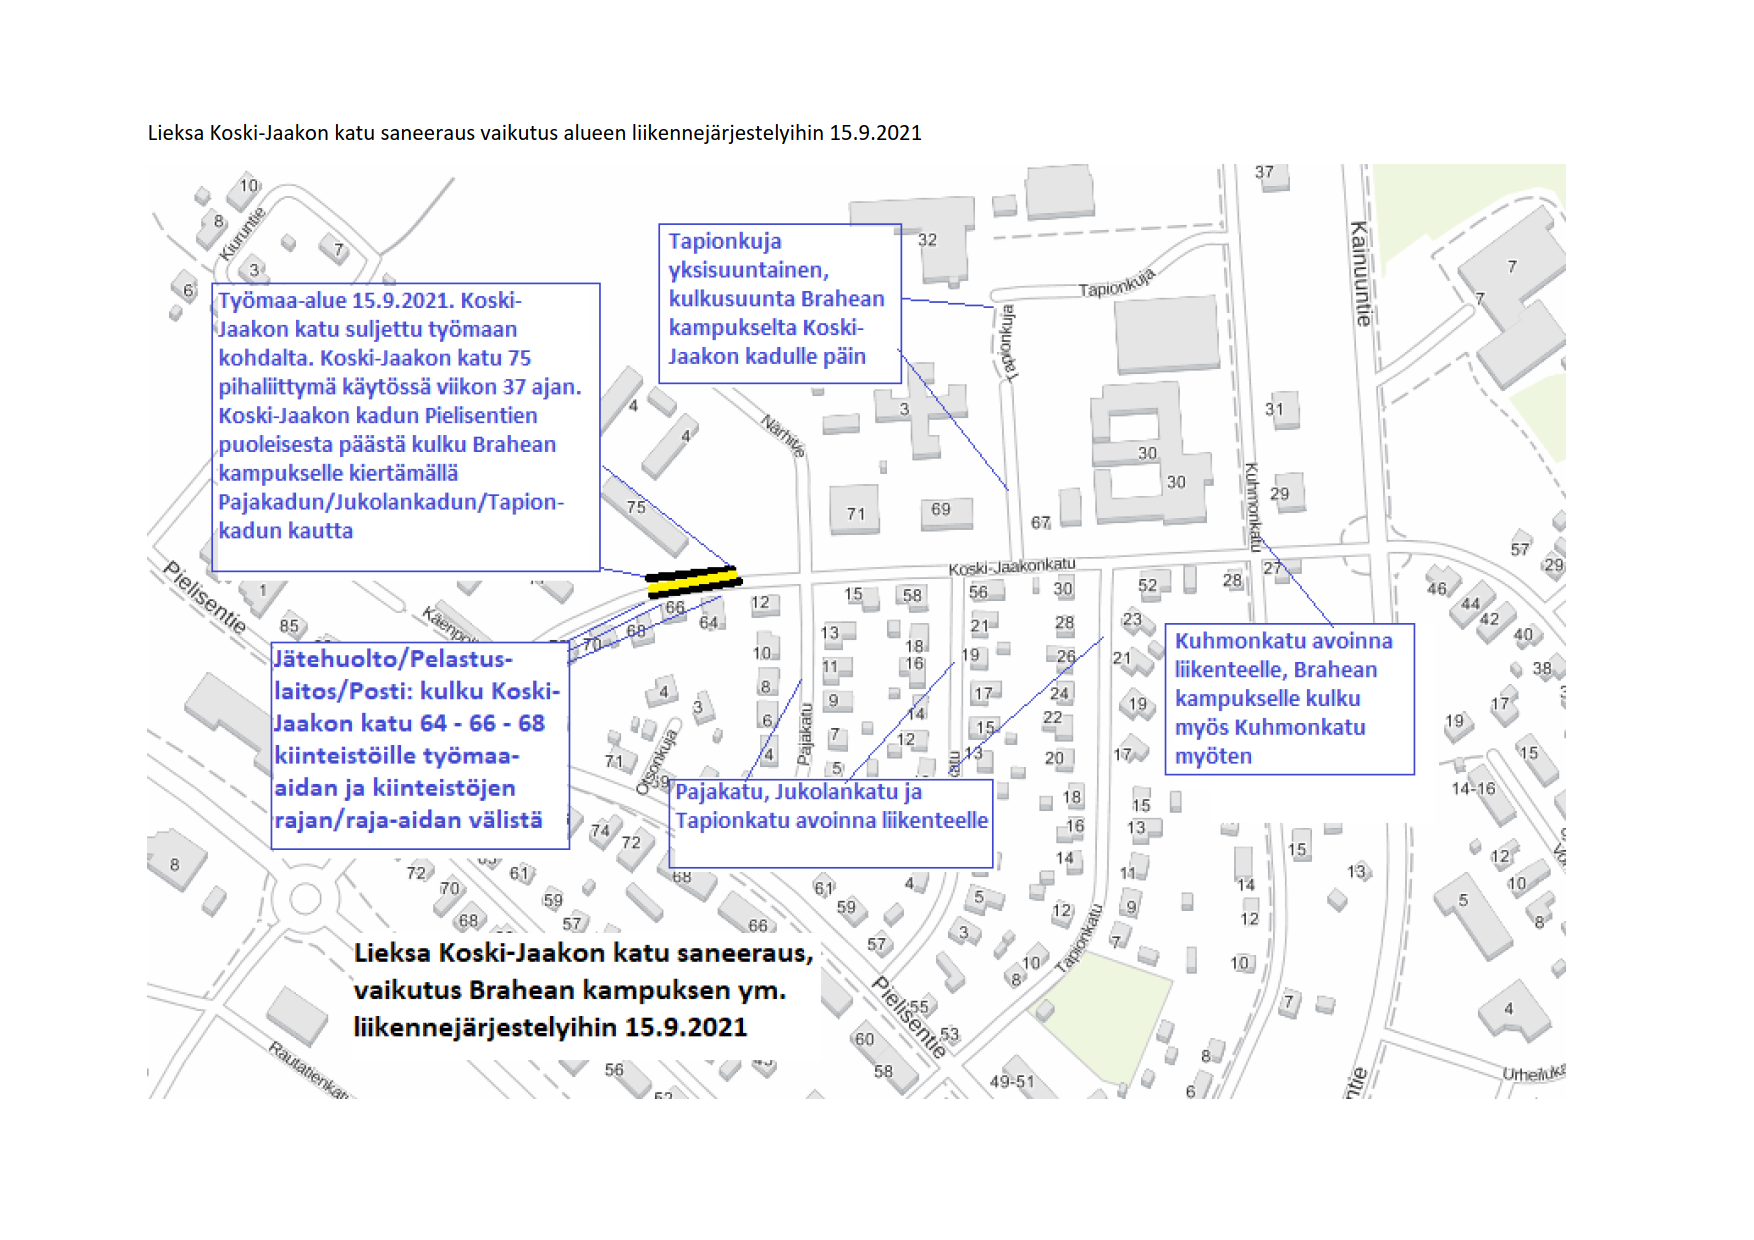 "Karttakuva Koski-Jaakon kadun saneeraustyömaan alueesta ja vaikutuksesta liikennejärjestelyihin. Vaikutukset kerrottu tekstissä. "